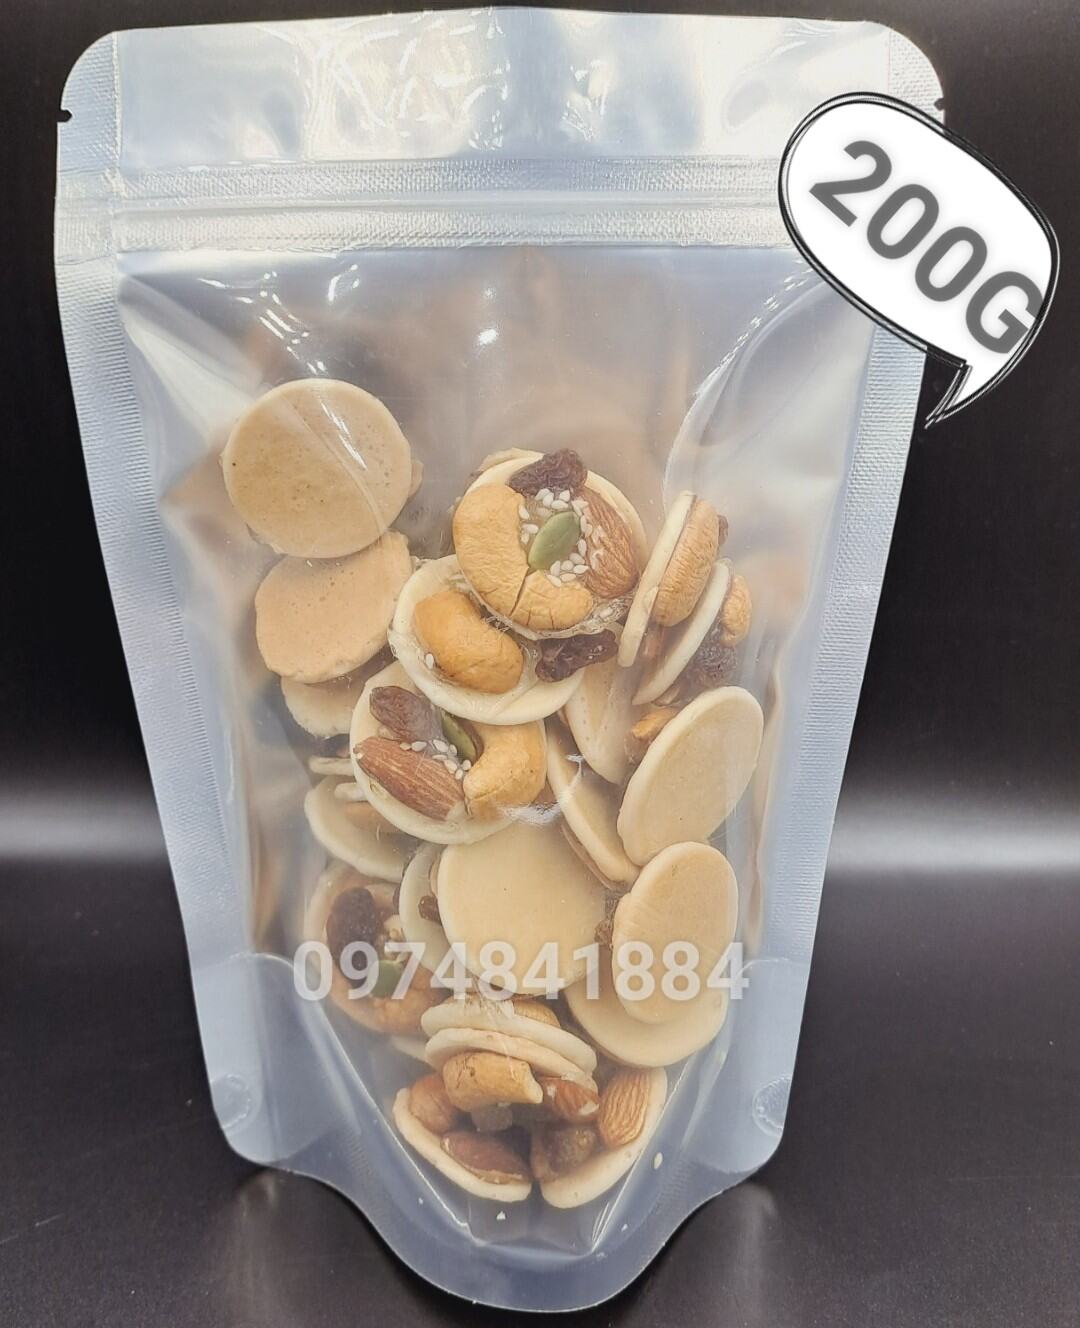 200g bánh đồng tiền mix các loại hạt (hạt điều hạnh nhân nho mè)- đồ ăn vặt - bách hóa online uy tín